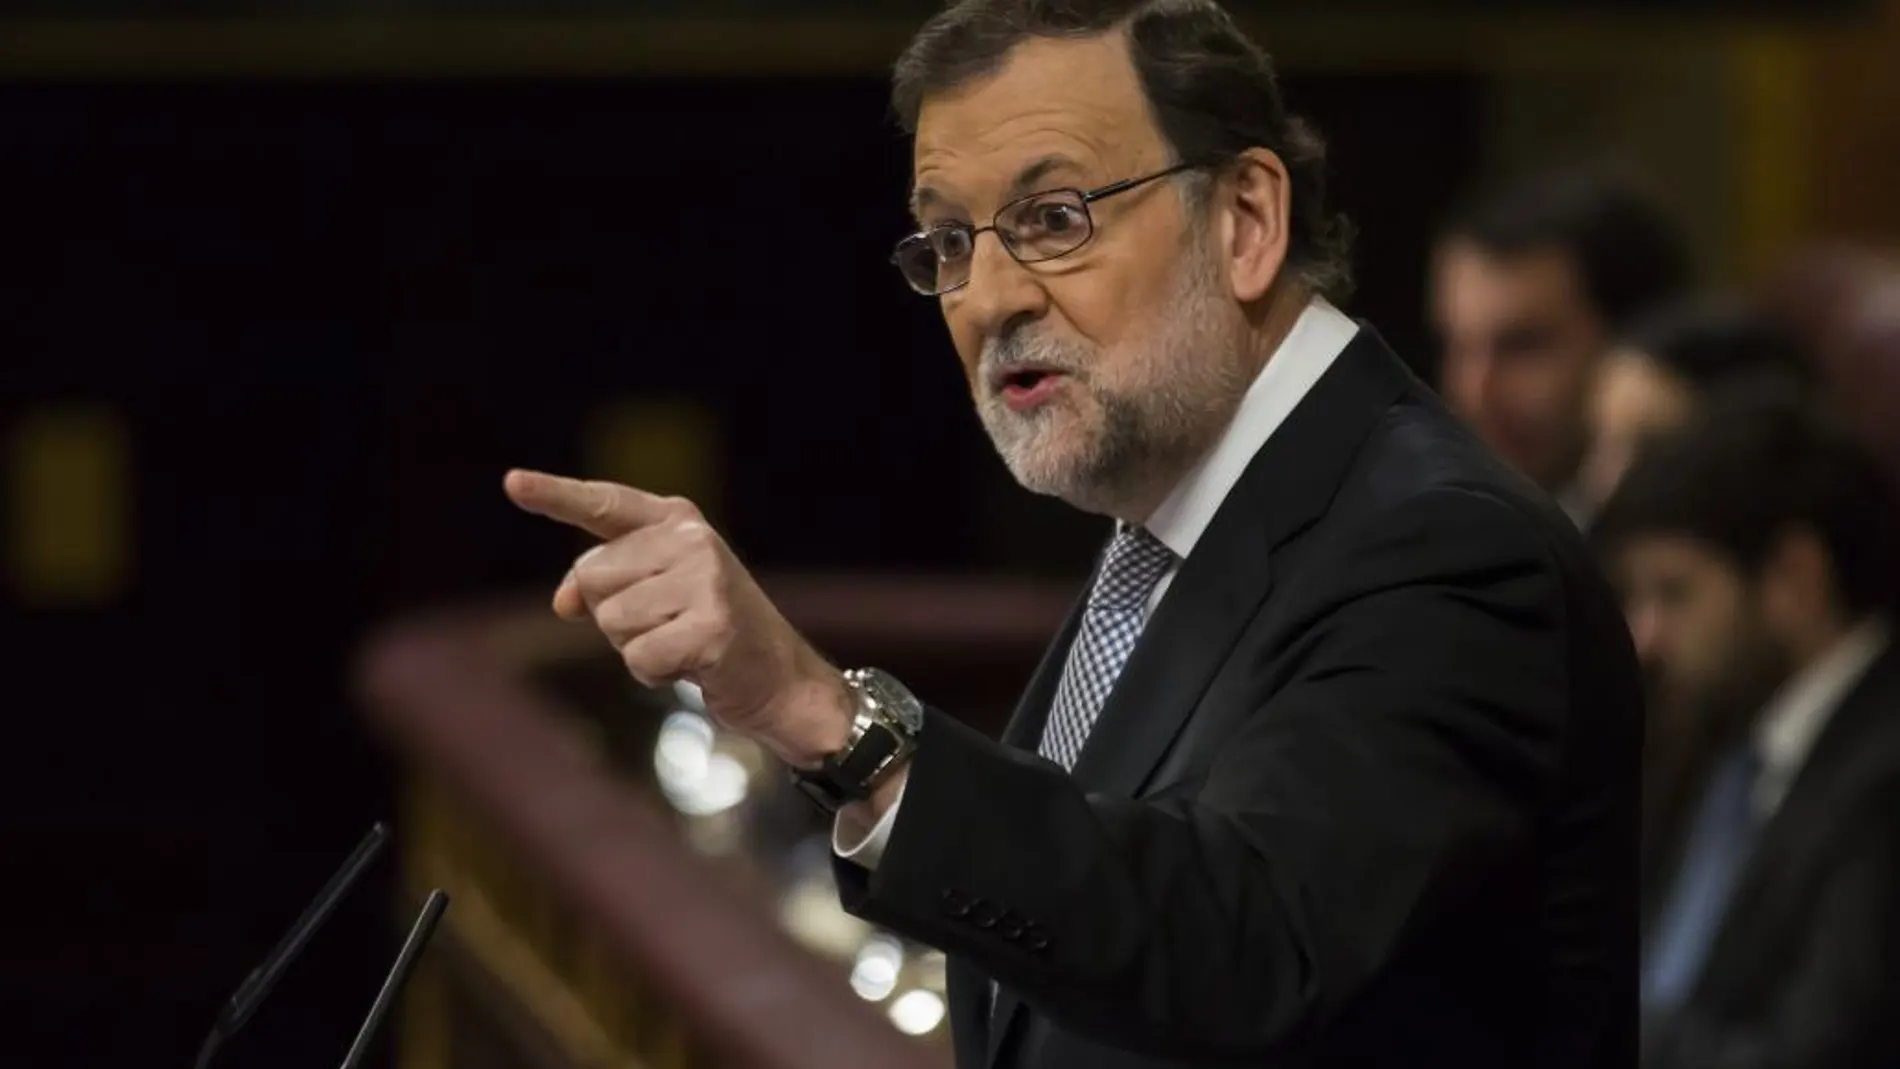 Debate de Investidura en el Congreso de los DiputadosMariano Rajoy, Presidente en Funciones© Alberto R. Roldan / La Razon02 03 2016